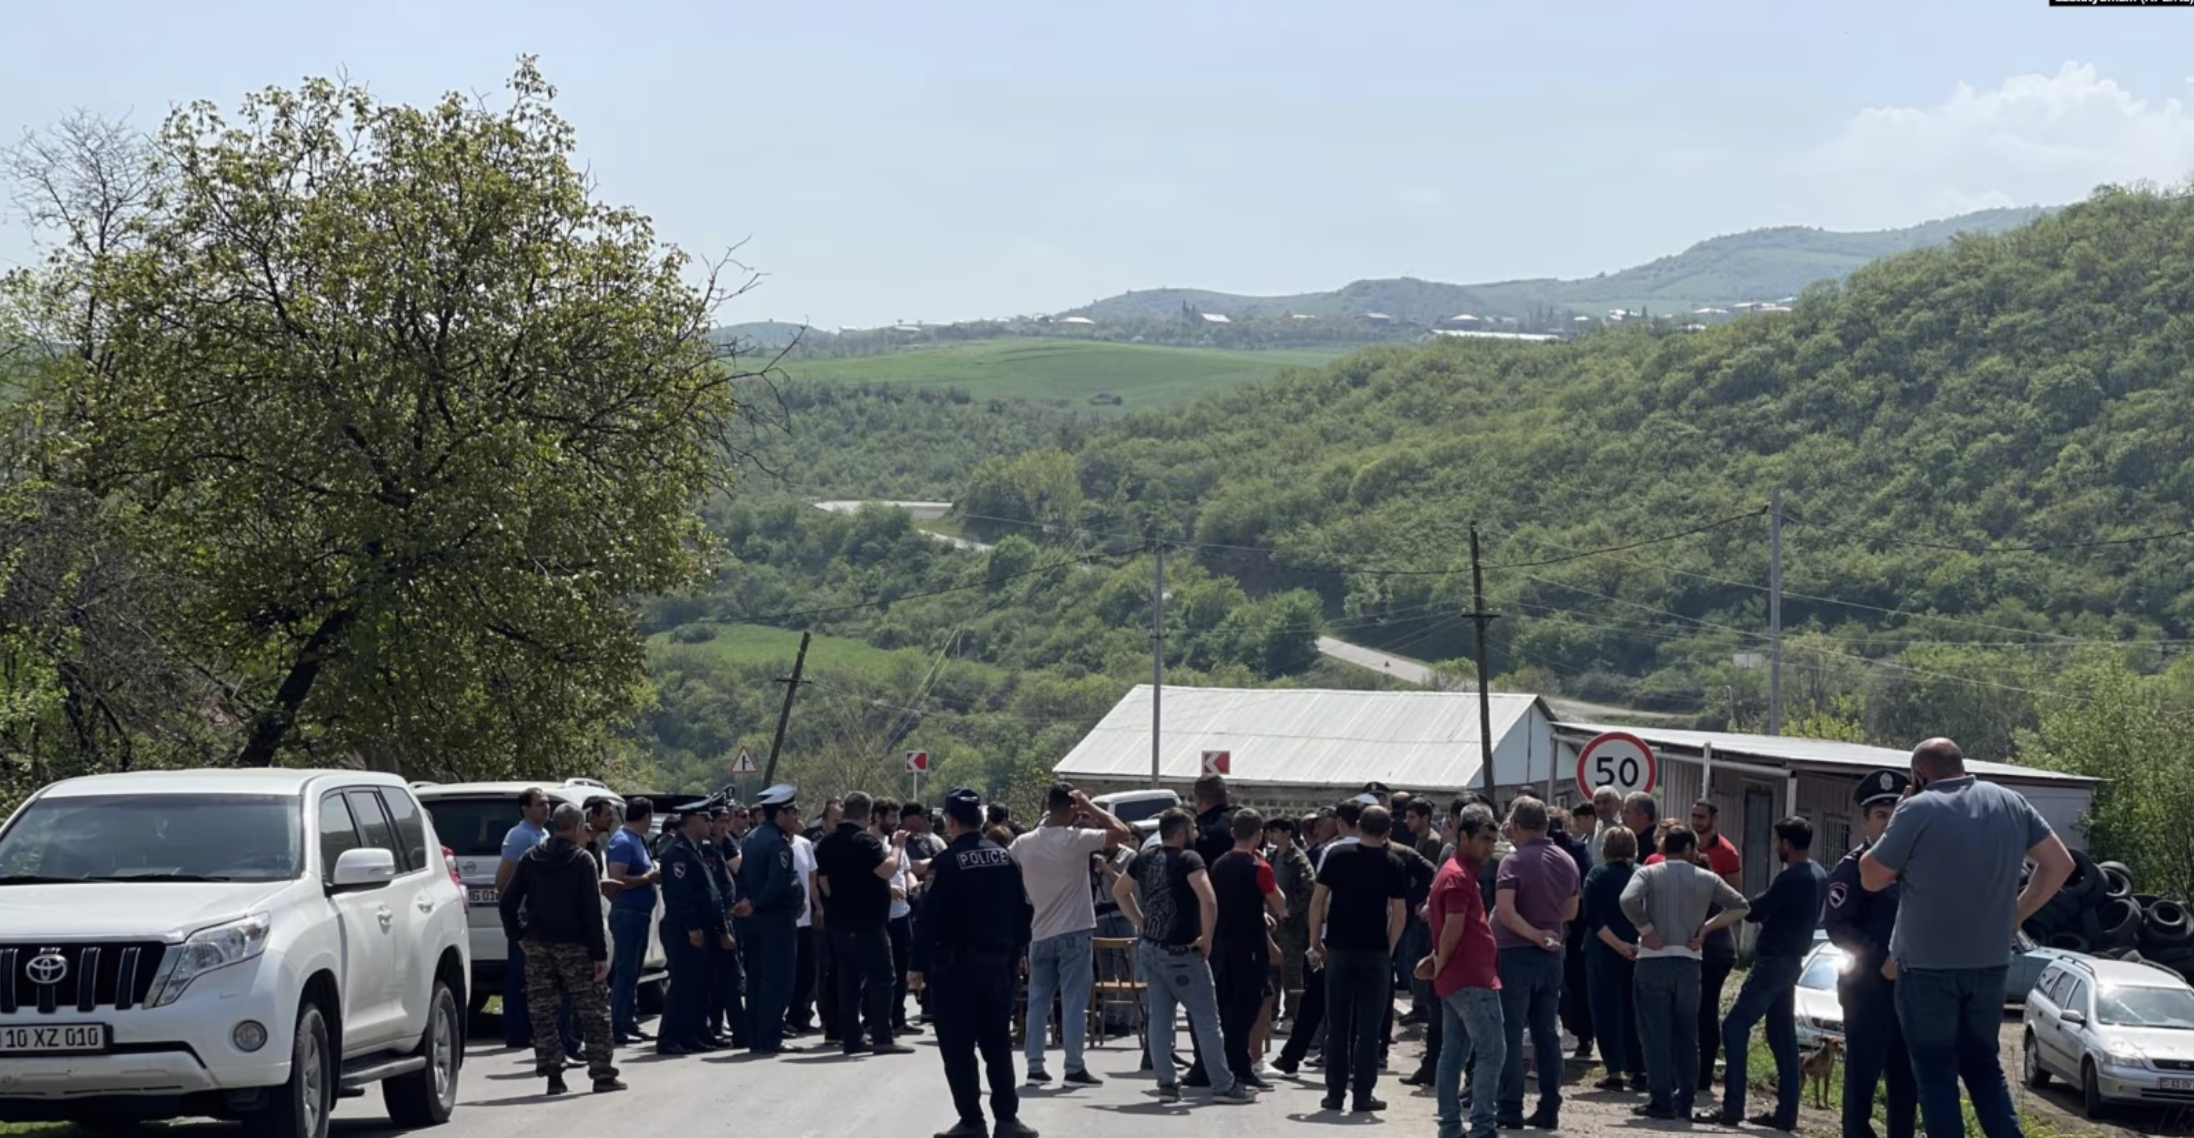 Διαδηλώσεις στη βορειανατολική Αρμενία! Διαμαρτυρίες των κατοίκων για τη συμφωνία οριοθέτησης με το Αζερμπαϊτζάν – Το Μπακού ανακτά τον έλεγχο τεσσάρων χωριών